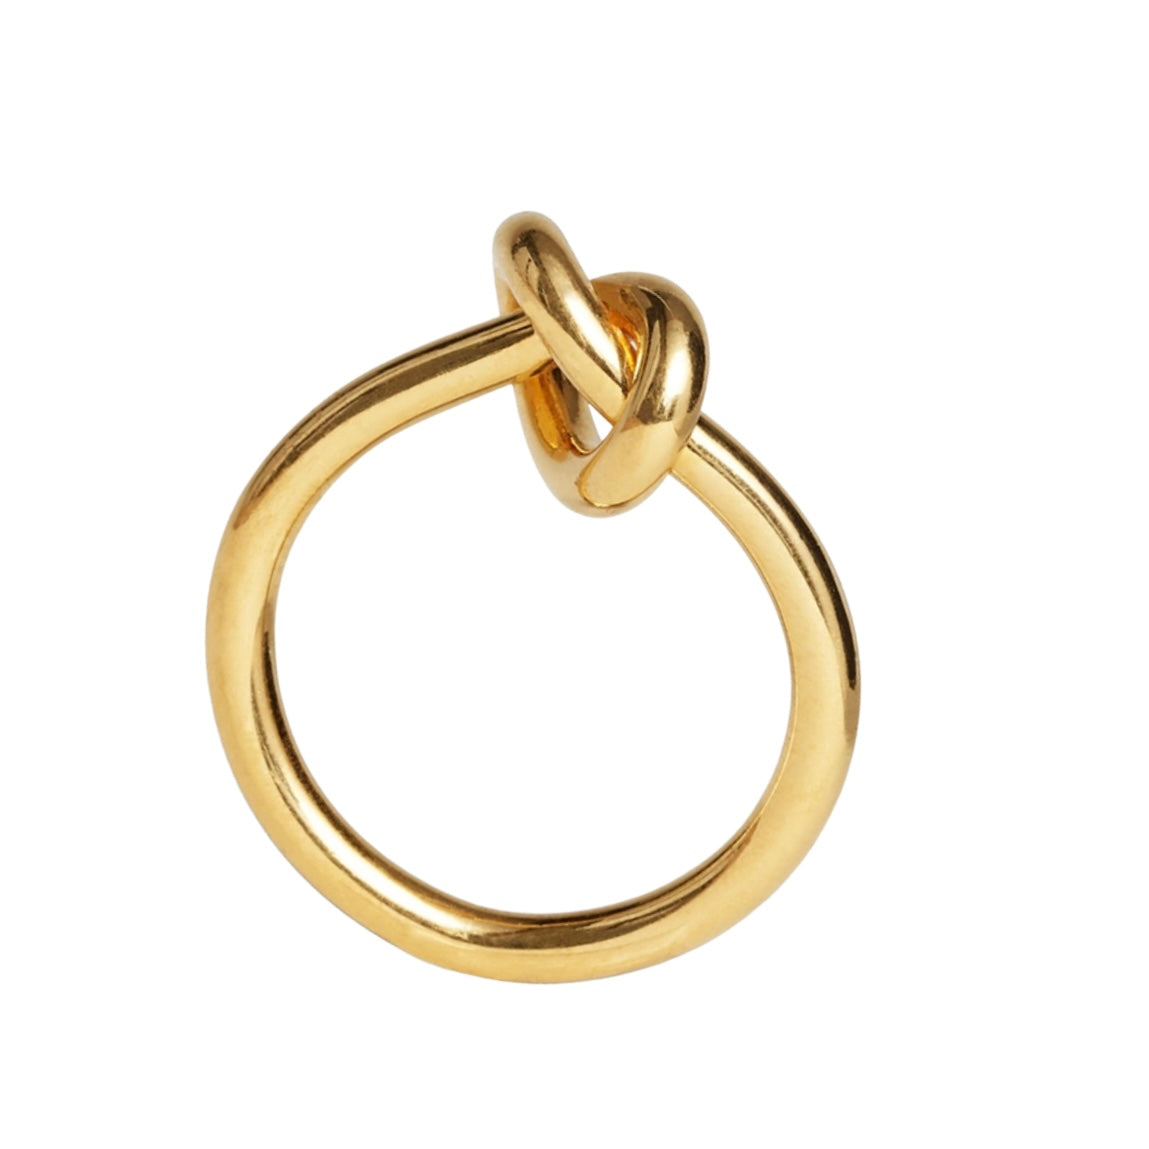 anello semplice con nodo, anello semplice dorato con nodo, anello semplice dorato, anello dorato in argento 925 con nodo, anello anallergico in argento 925 con nodo, anello anallergico in argento 925, anello nodo oro, anello nodo dorato